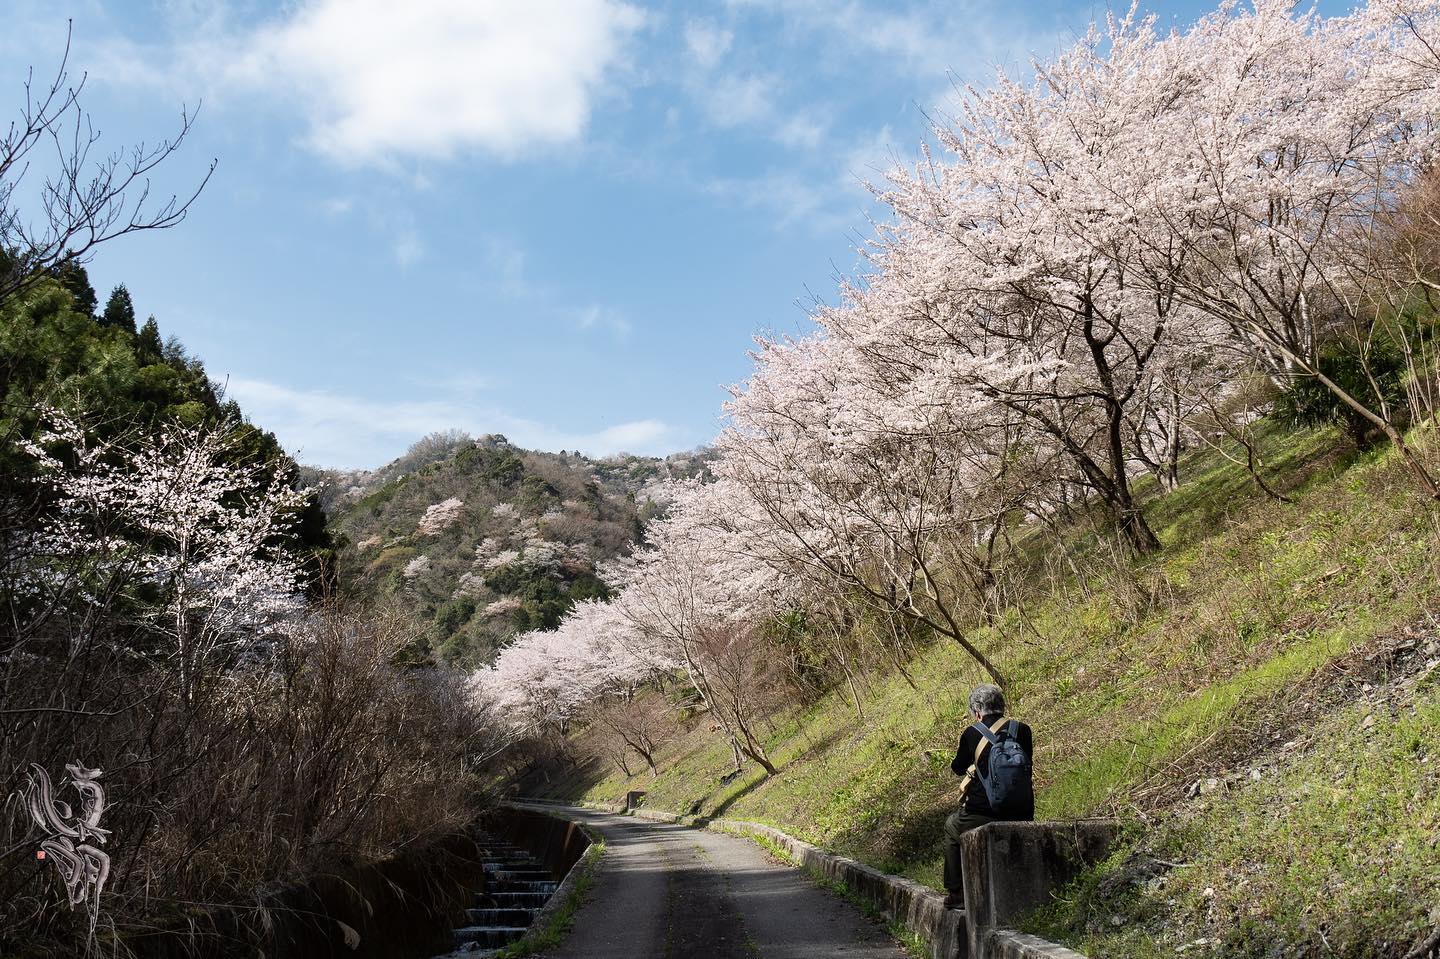 Instagram更新しました。 eg. 雨山の桜並木こんにちは。「想いをカタチに」 和歌山の小さな写真屋･はれのひ工房のカメラマンの末藤（スエトウ）です。一日お疲れさまです。今日はもう一カ所、桃山町の最初ヶ峰の近くの雨山の桜並木を見に行きました。ここは僕の中でも5本の指に入る和歌山の桜の名所なんです。昼過ぎからはトンネルから続く桜並木が鮮やかに照らし出されて、その先に山桜の山がある。壮大でとてもキレイな風景です。残りの穴場も行きたいと思いますが、今年は桜も足が早そうなので行けるかな。 – from Instagram